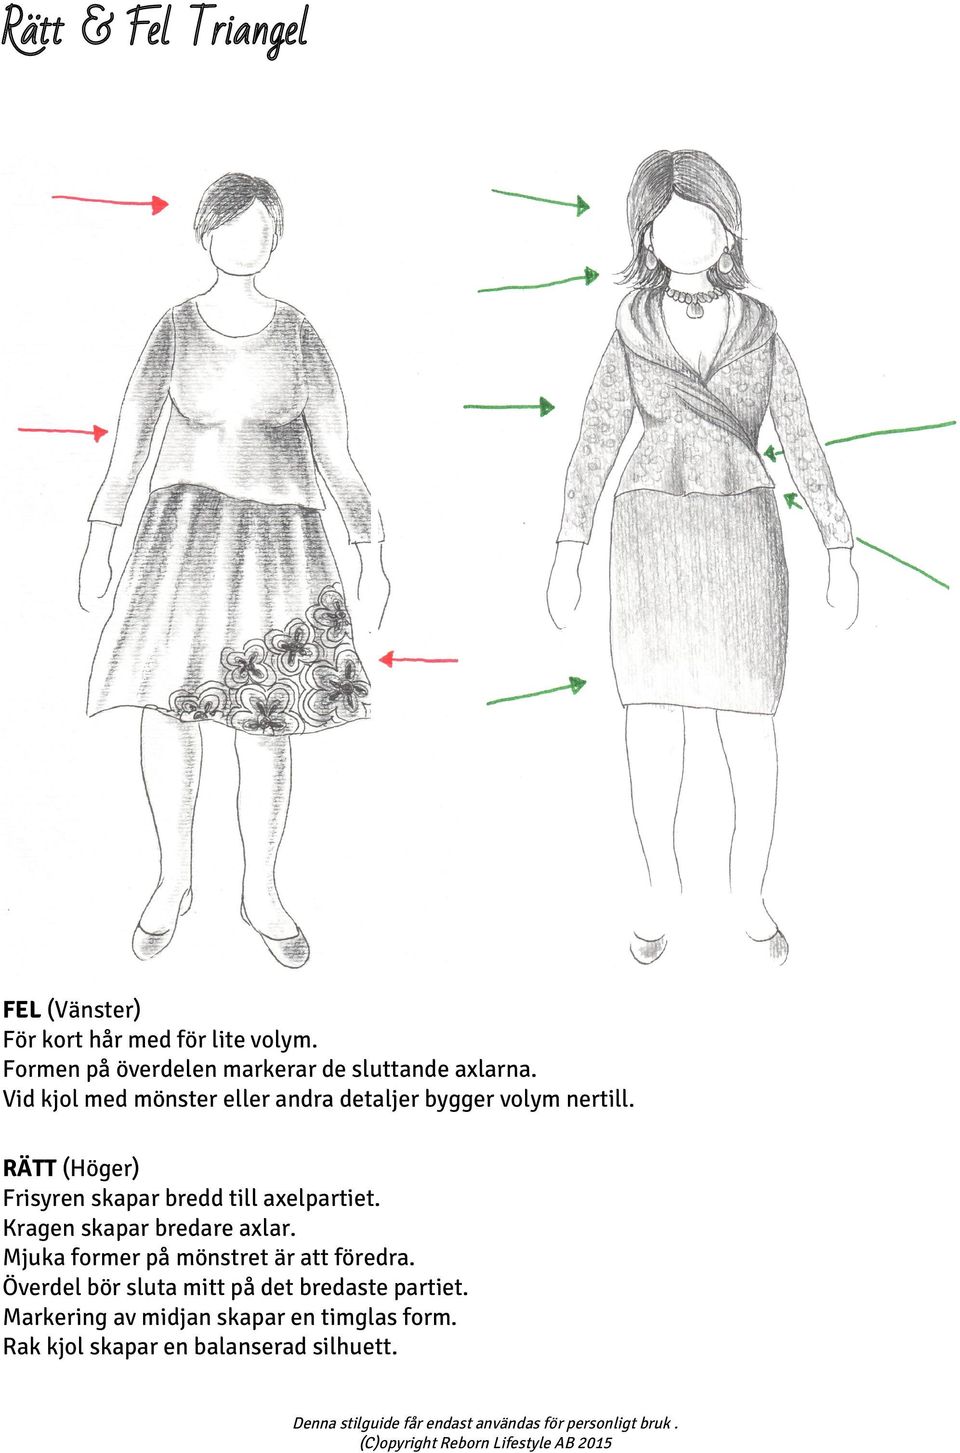 Vid kjol med mönster eller andra detaljer bygger volym nertill.